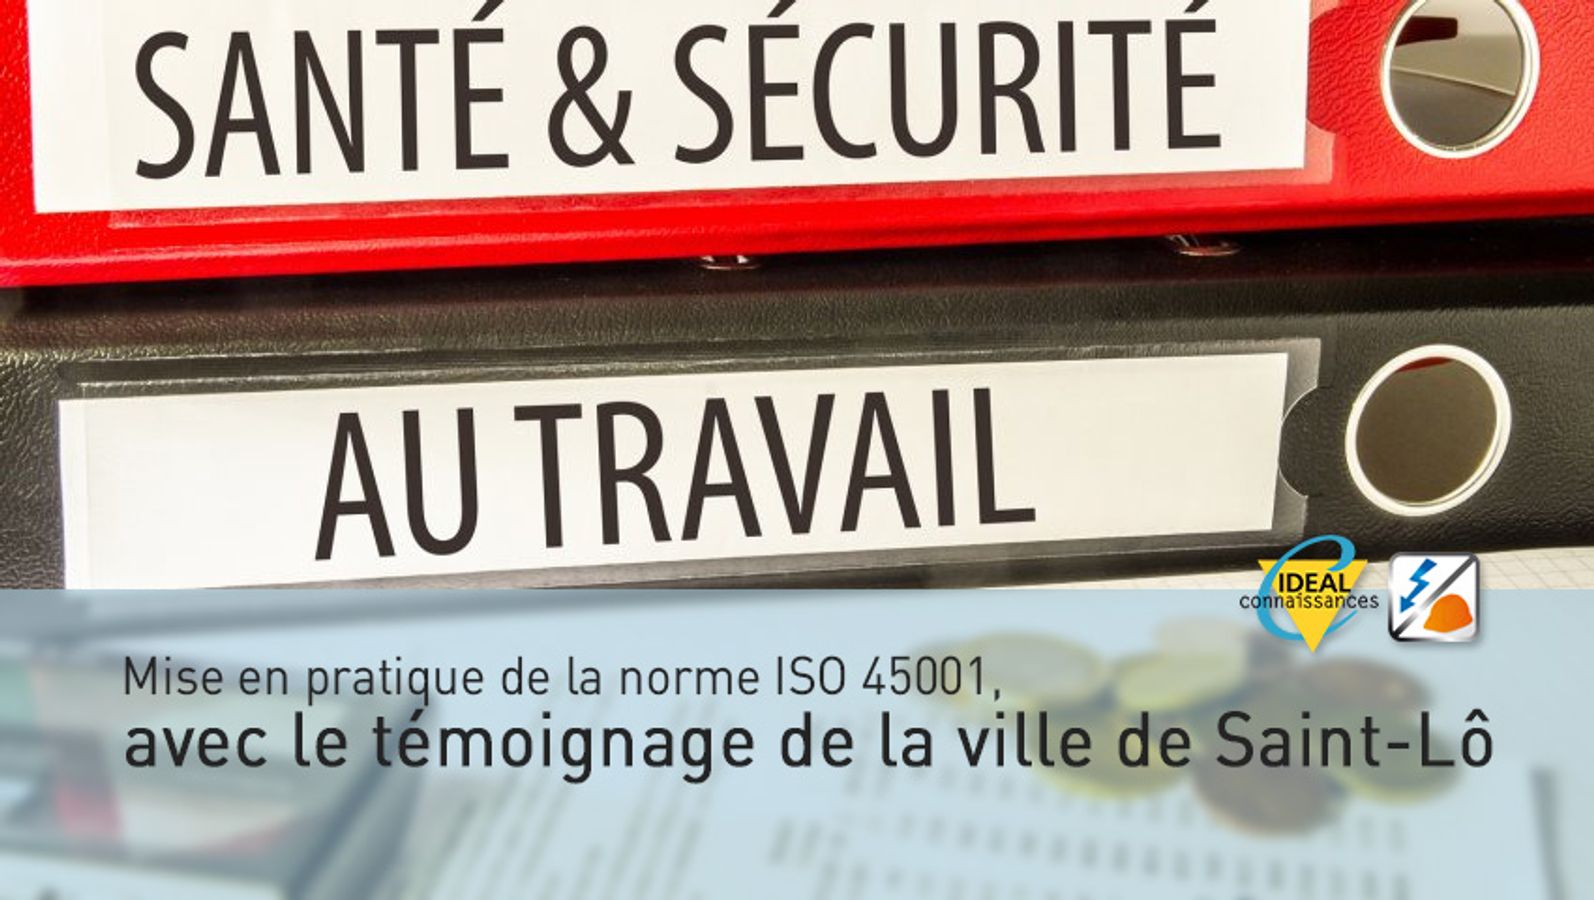 Mise en pratique de la norme ISO 45001, avec le témoignage de la ville de Saint-Lô.